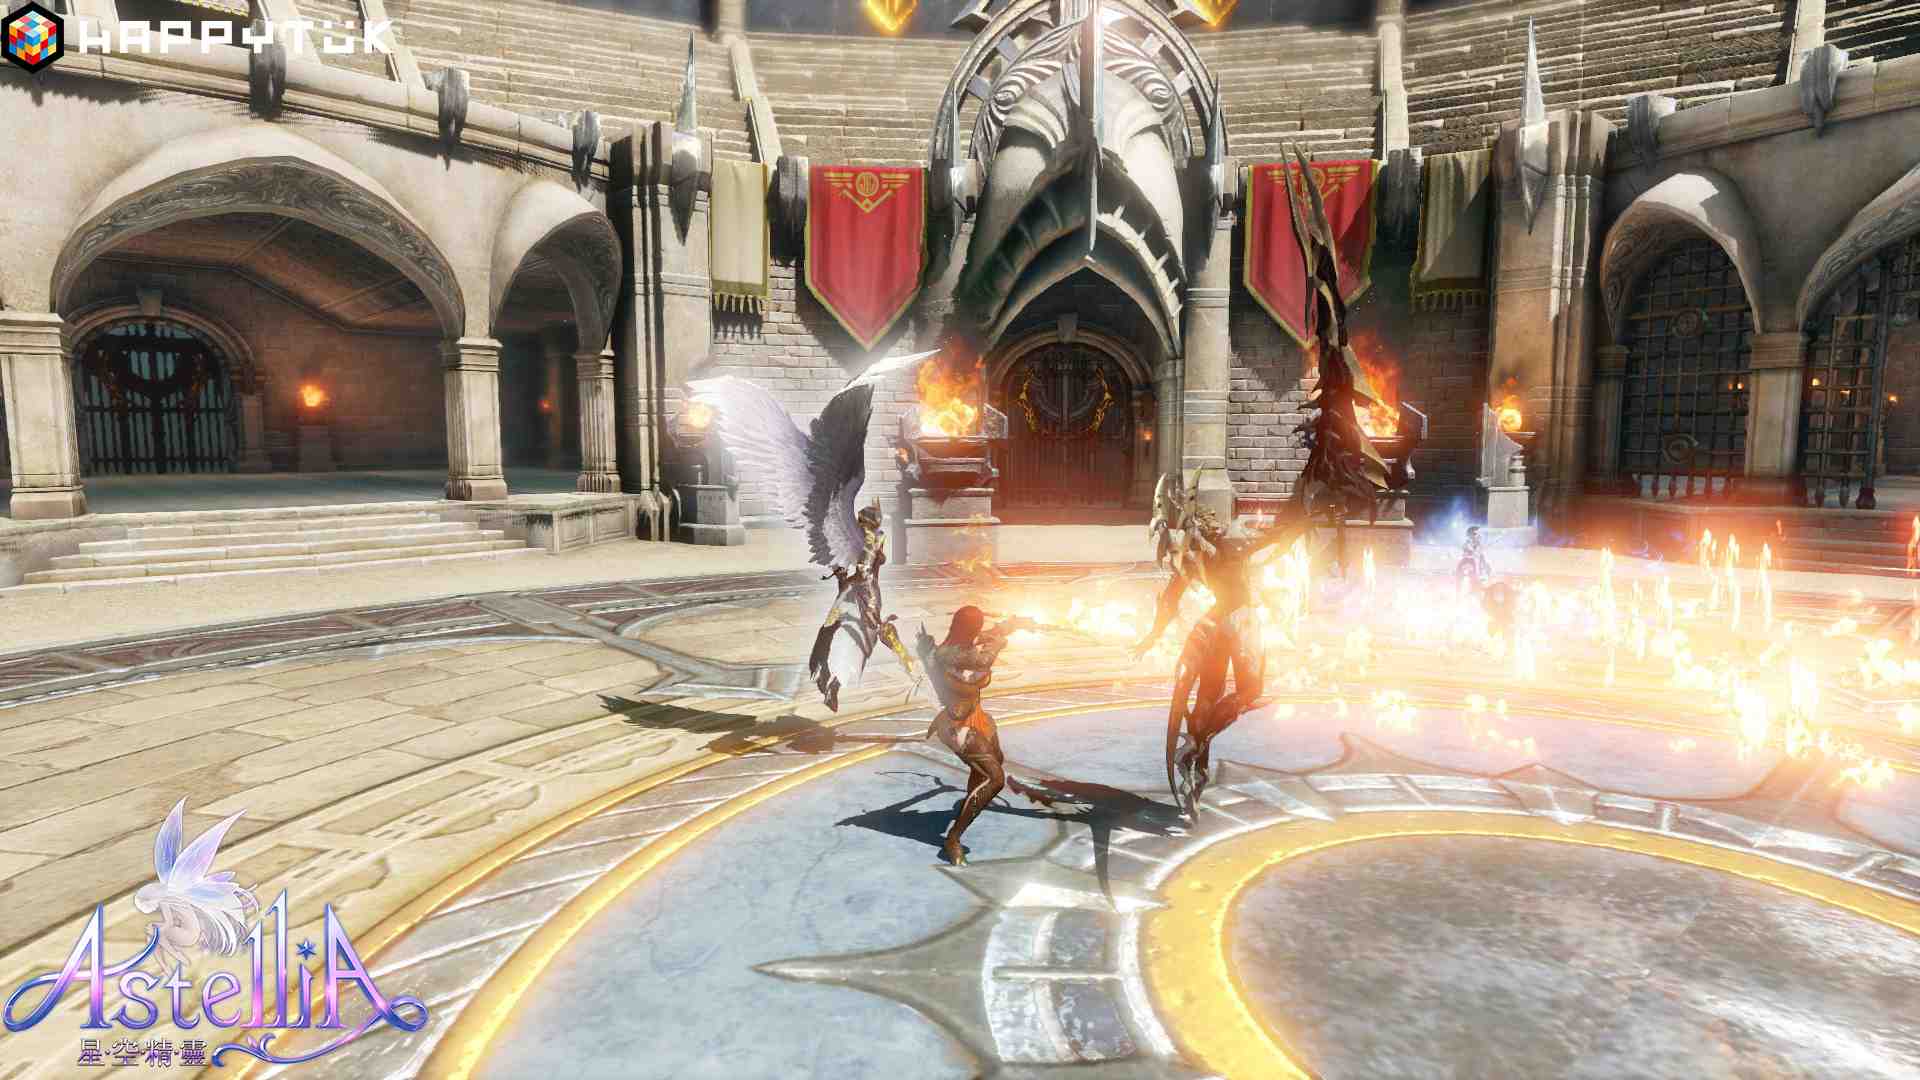 樂意傳播宣布取得《星空精靈 Online》代理權，遊戲揭露特色「星靈」系統